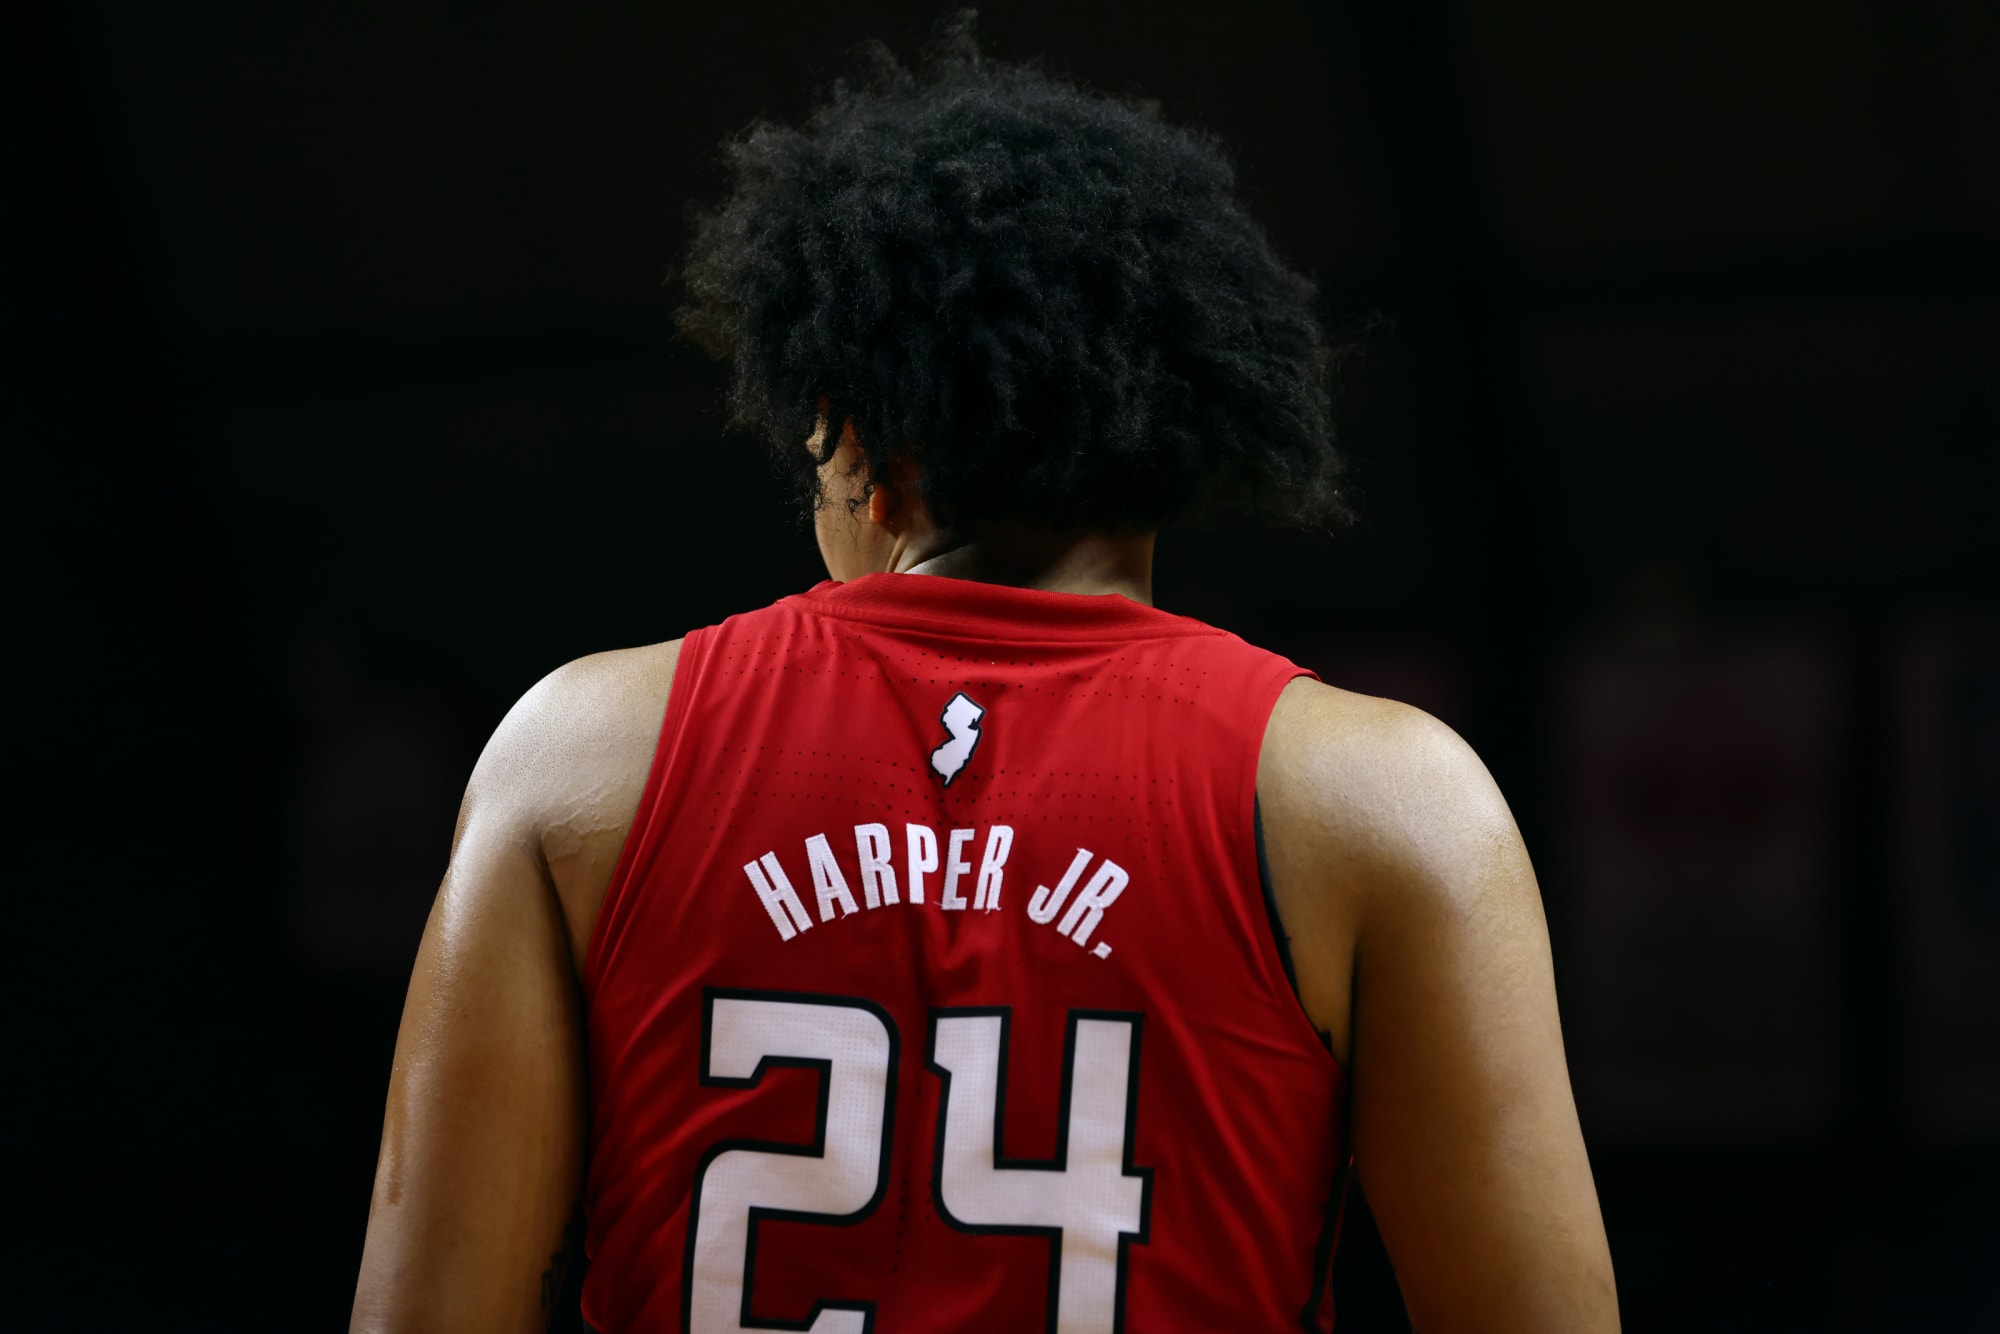 Raptors' Ron Harper Jr. 'confident I belong' in NBA